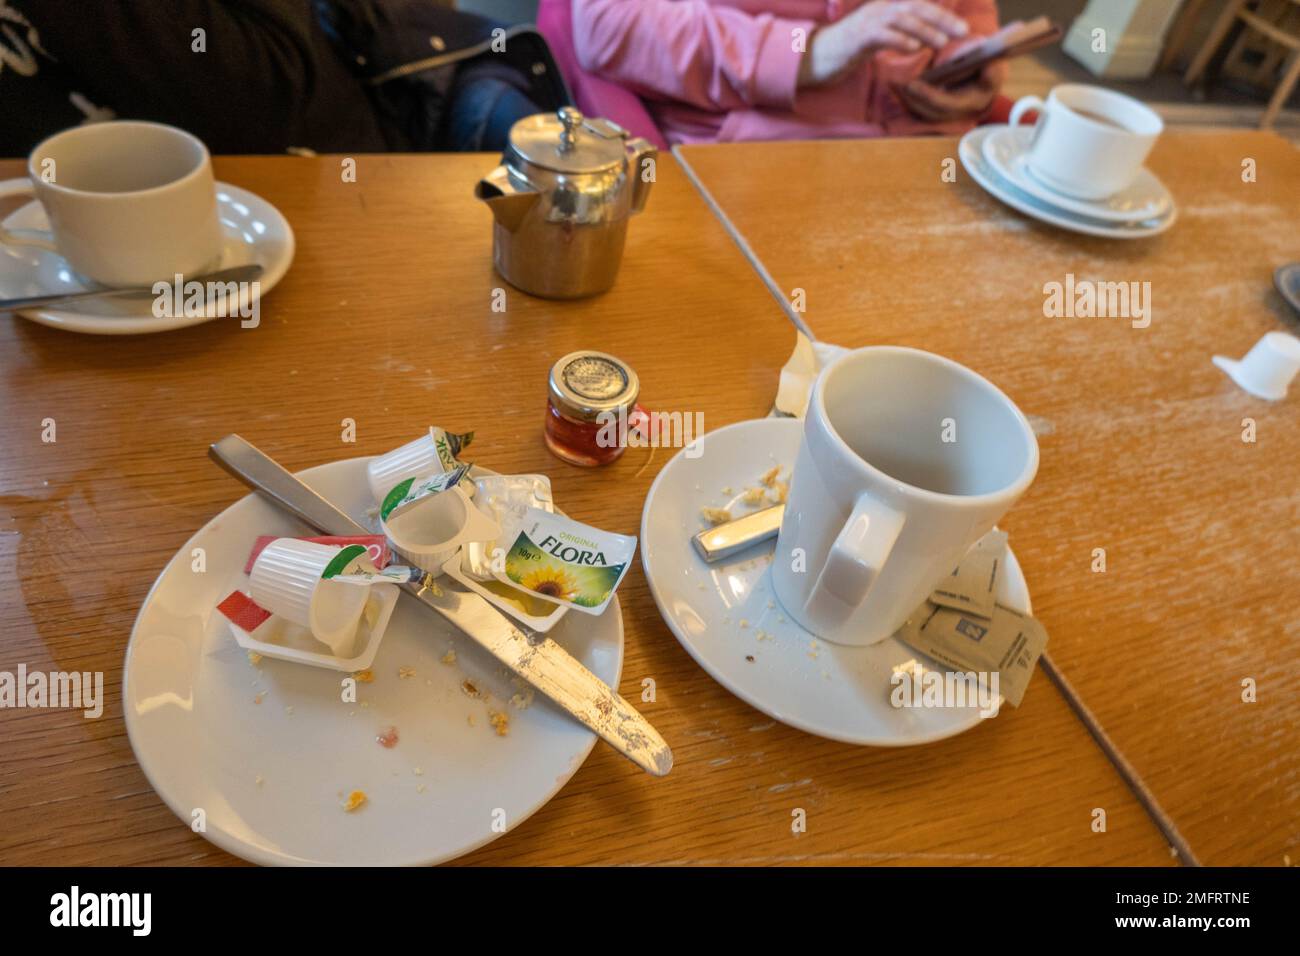 Dirty dinner plates immagini e fotografie stock ad alta risoluzione - Alamy